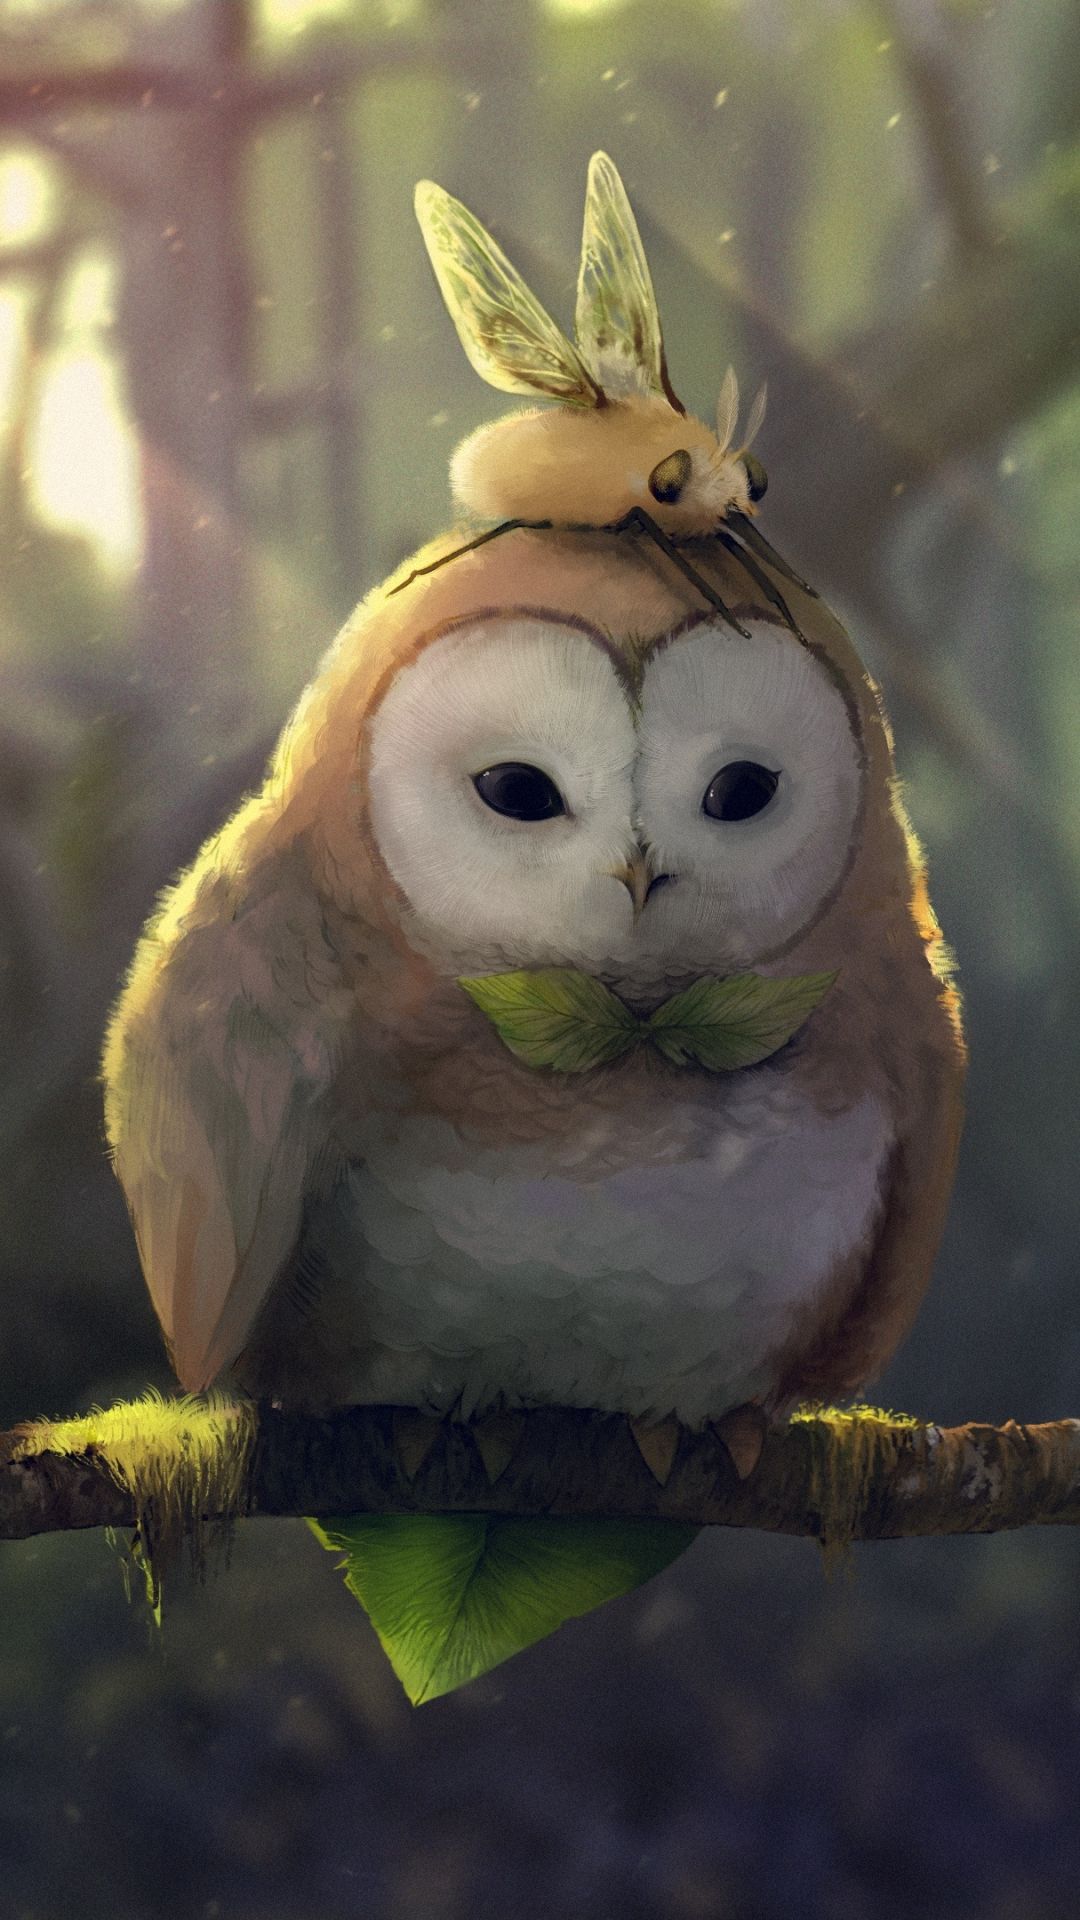 Fantasy / Owl (1080x1920) Mobile Wallpaper. Owl wallpaper, Owl